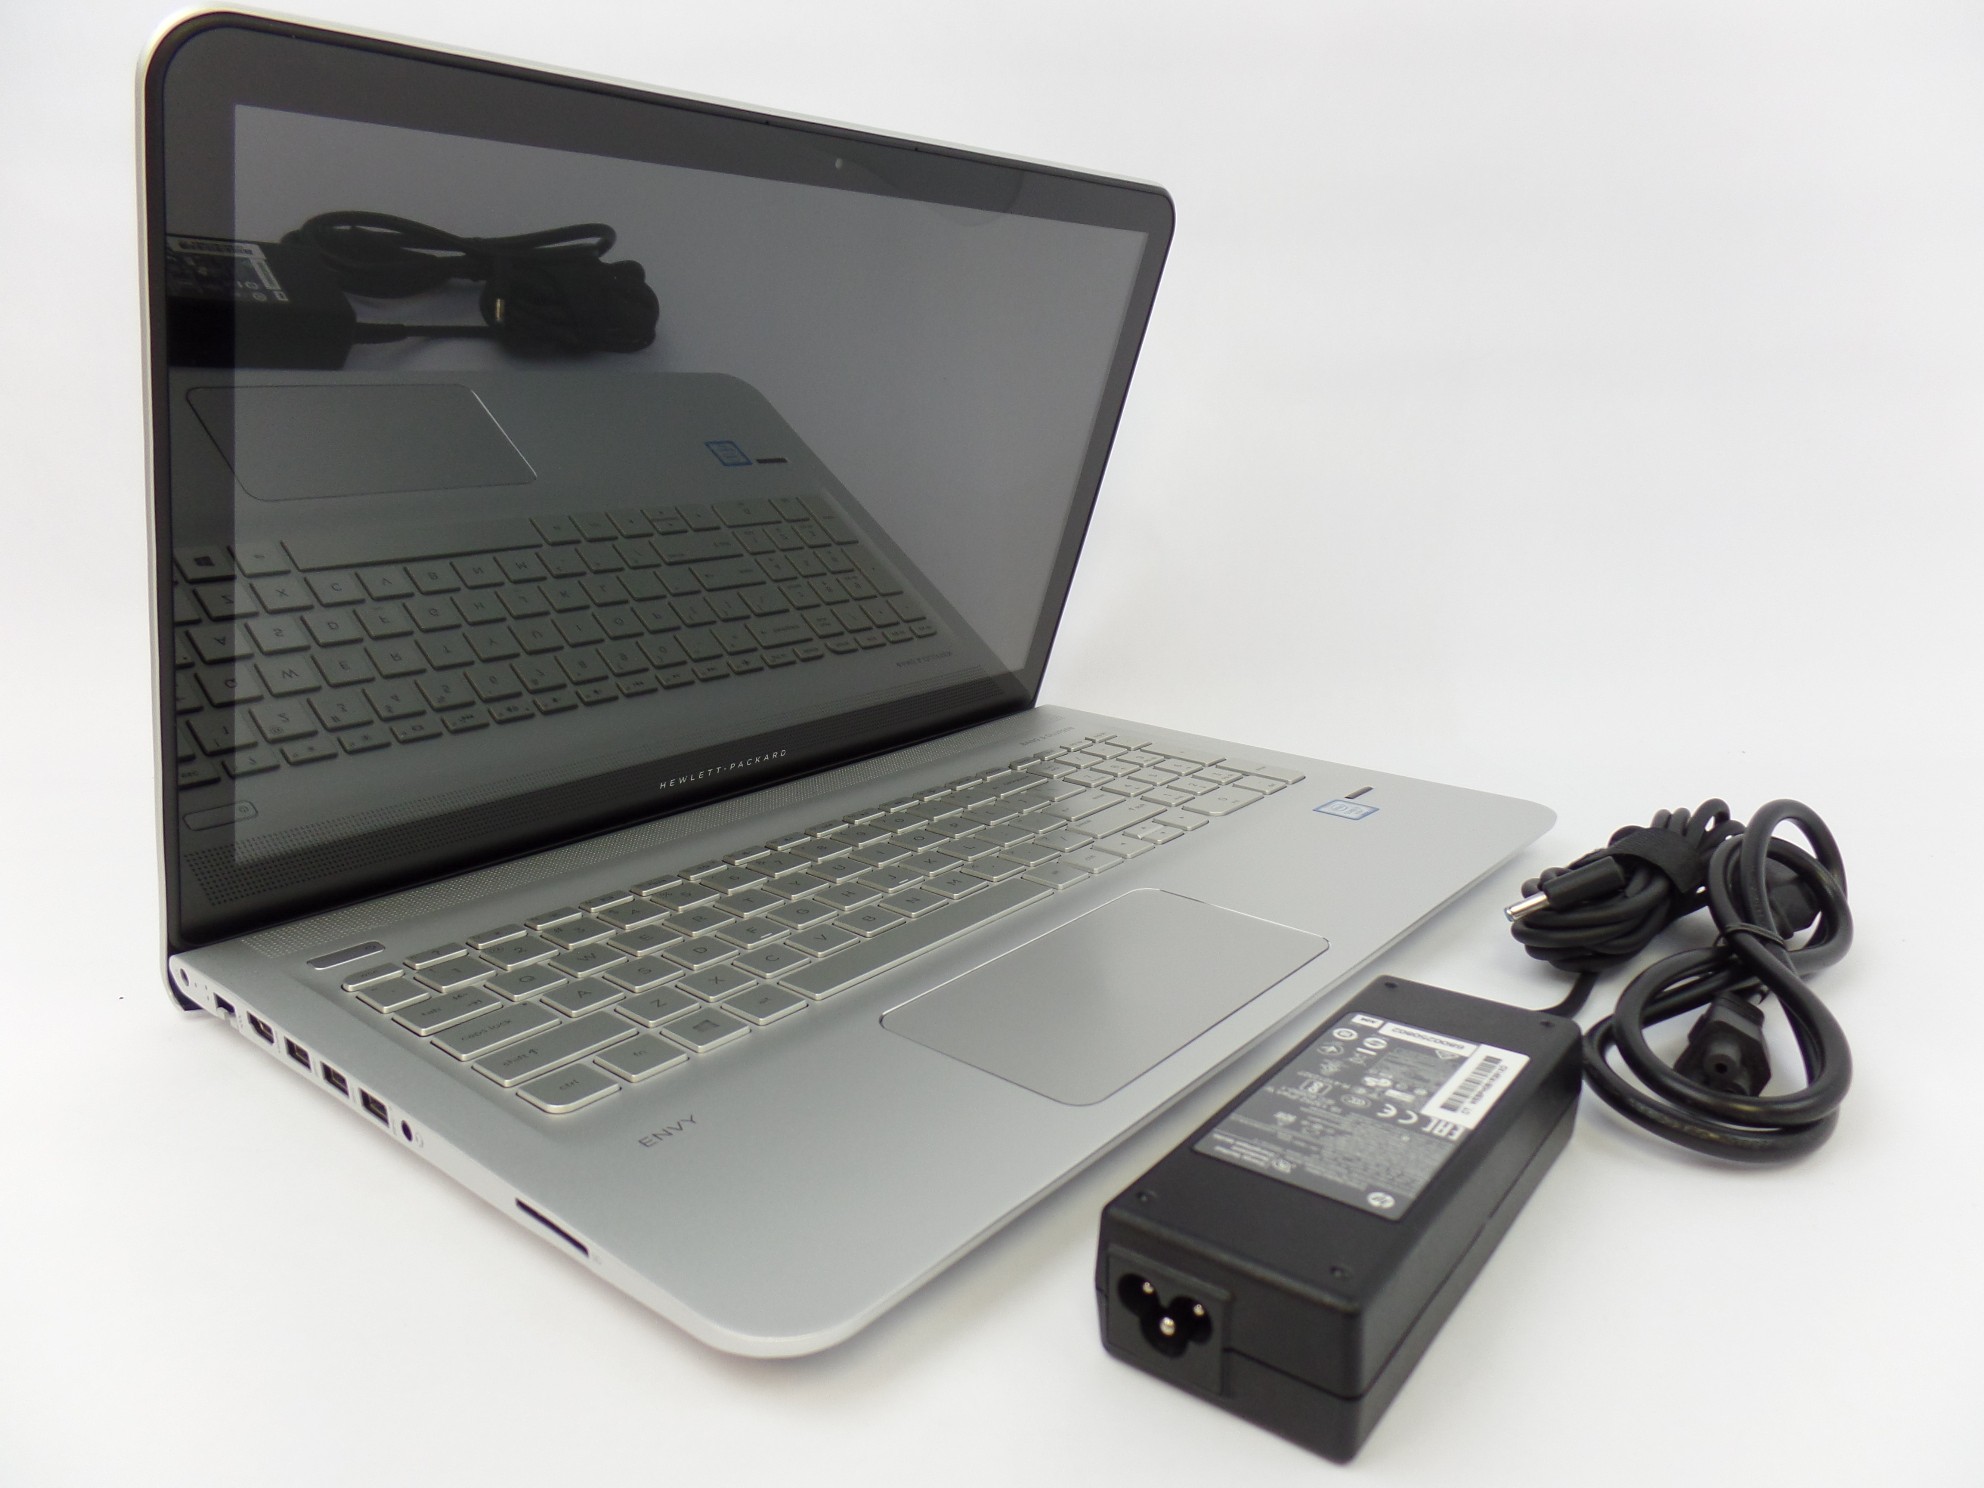 HP ENVY 15t-ae100 15.6" HD Touch i7-6700HQ 2.6GHz 12GB 1TB W10H Laptop